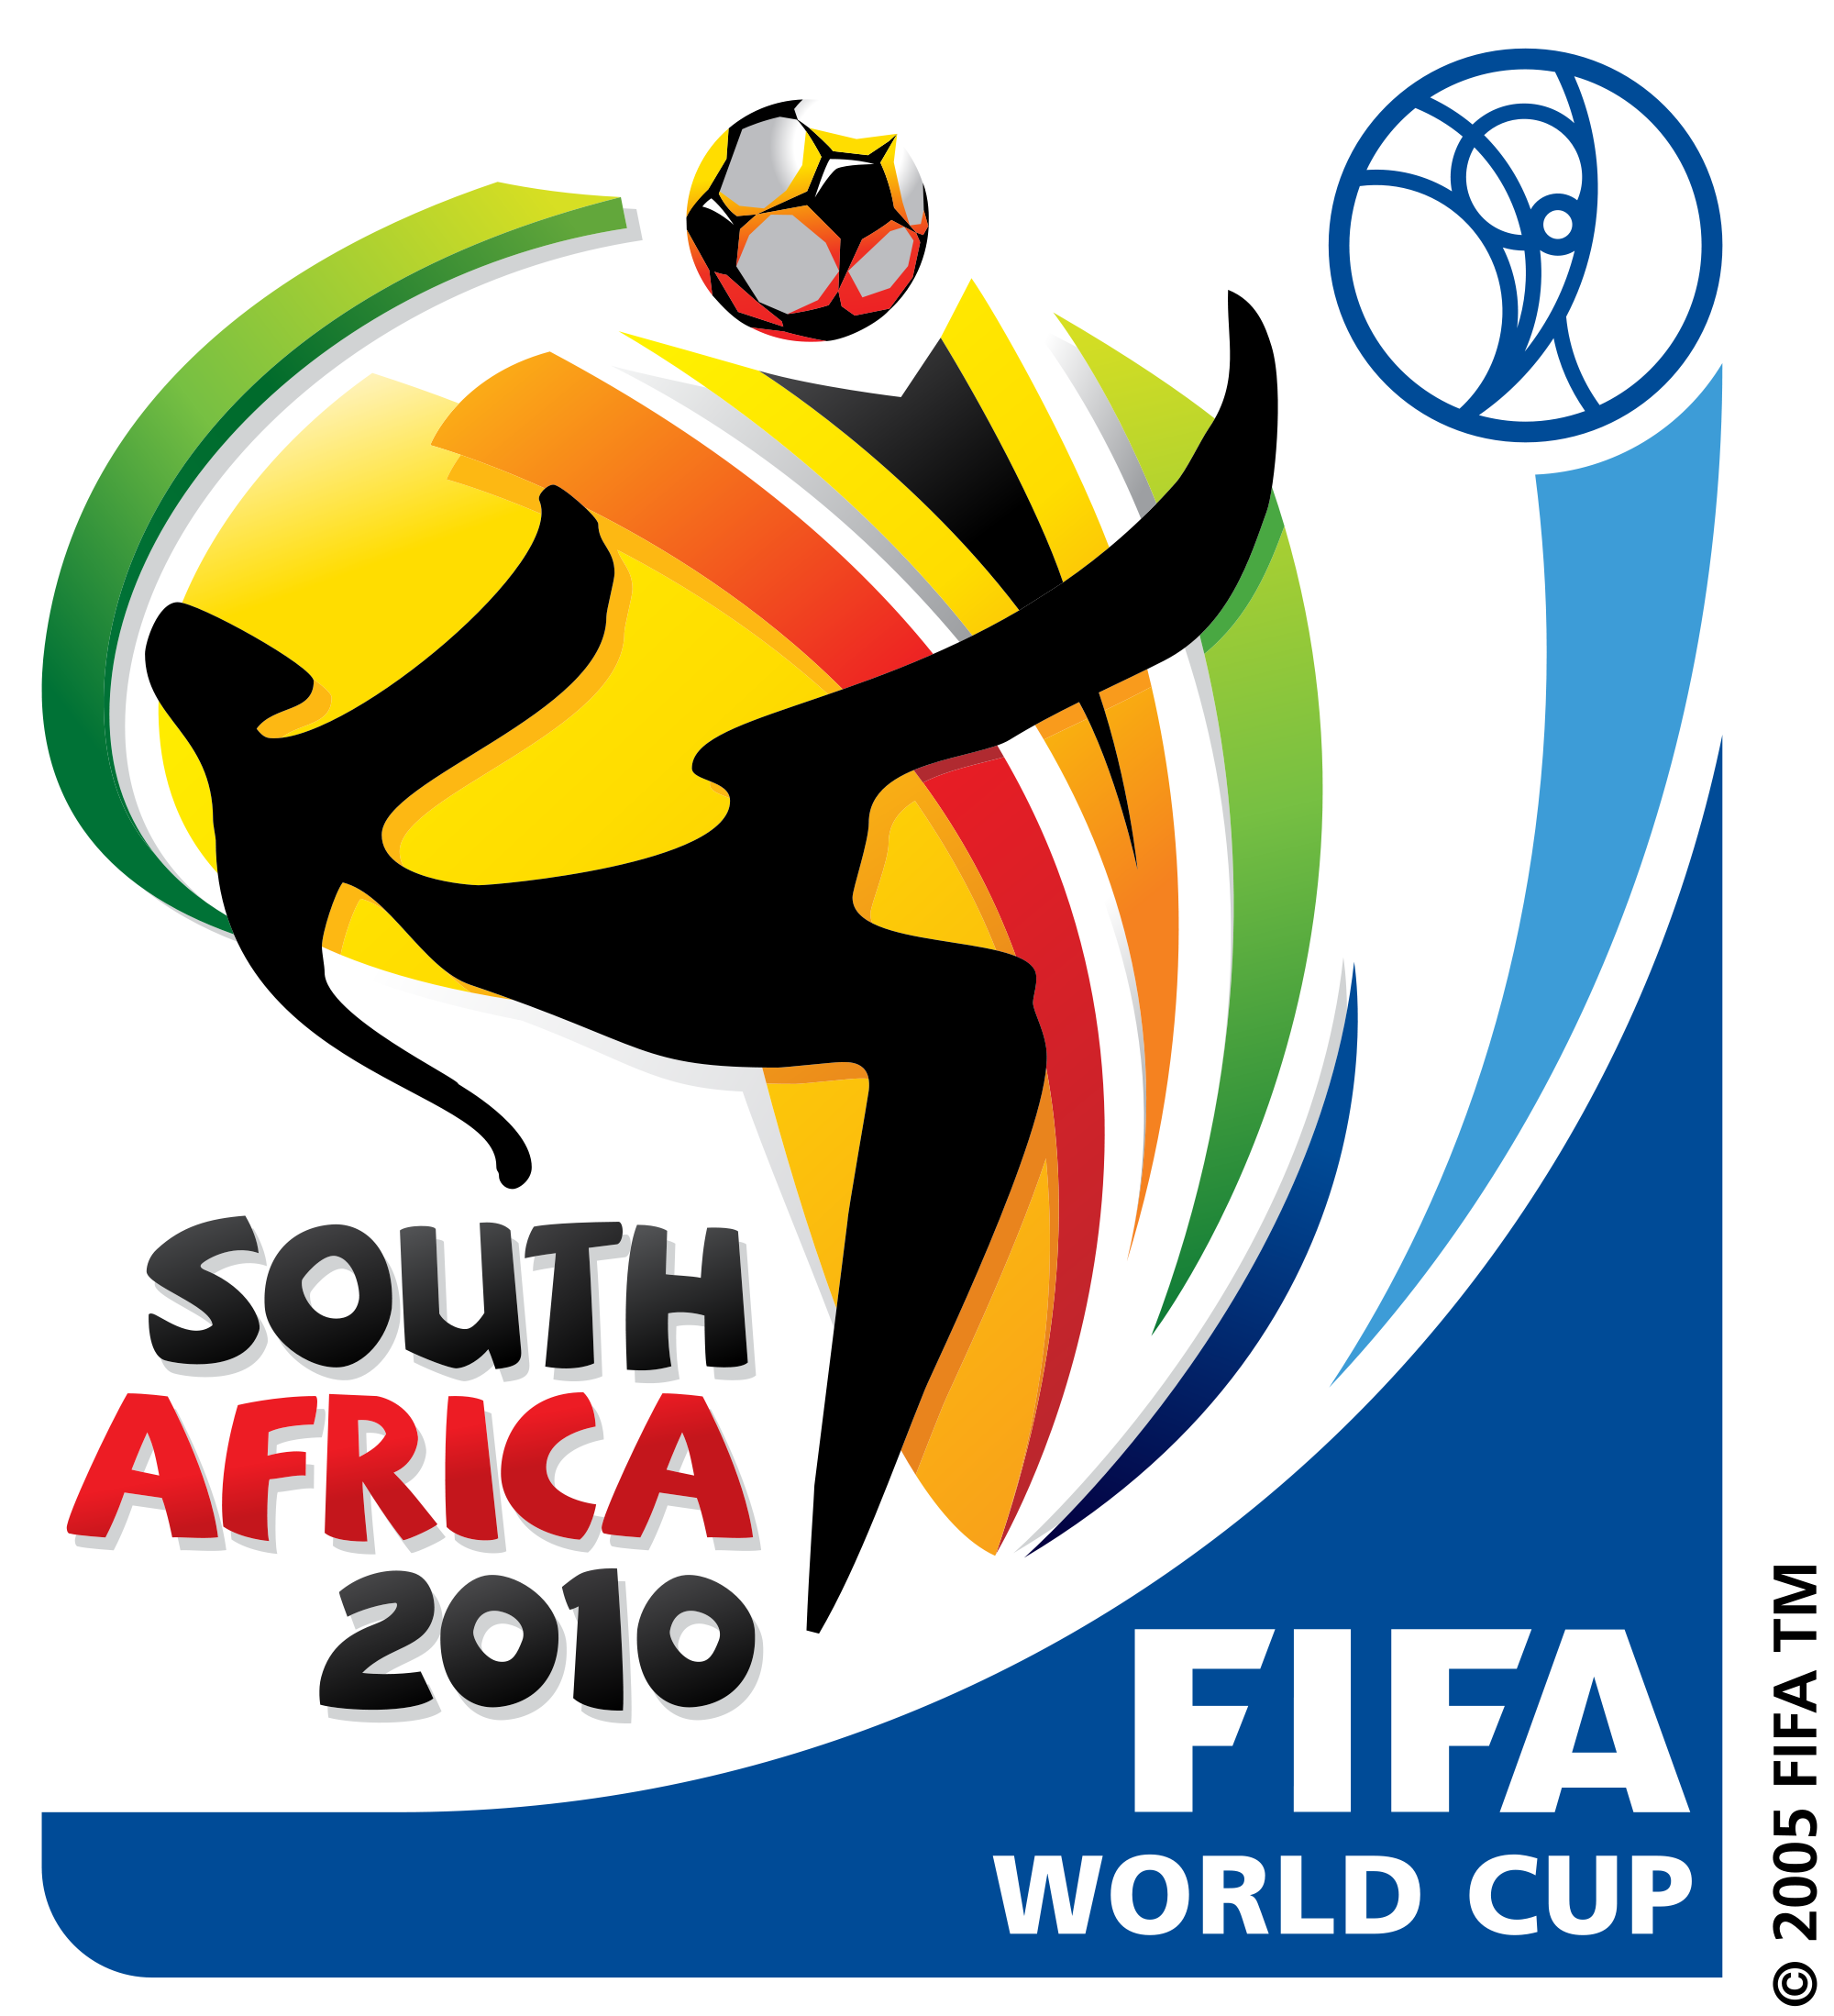 Mondiali 2010